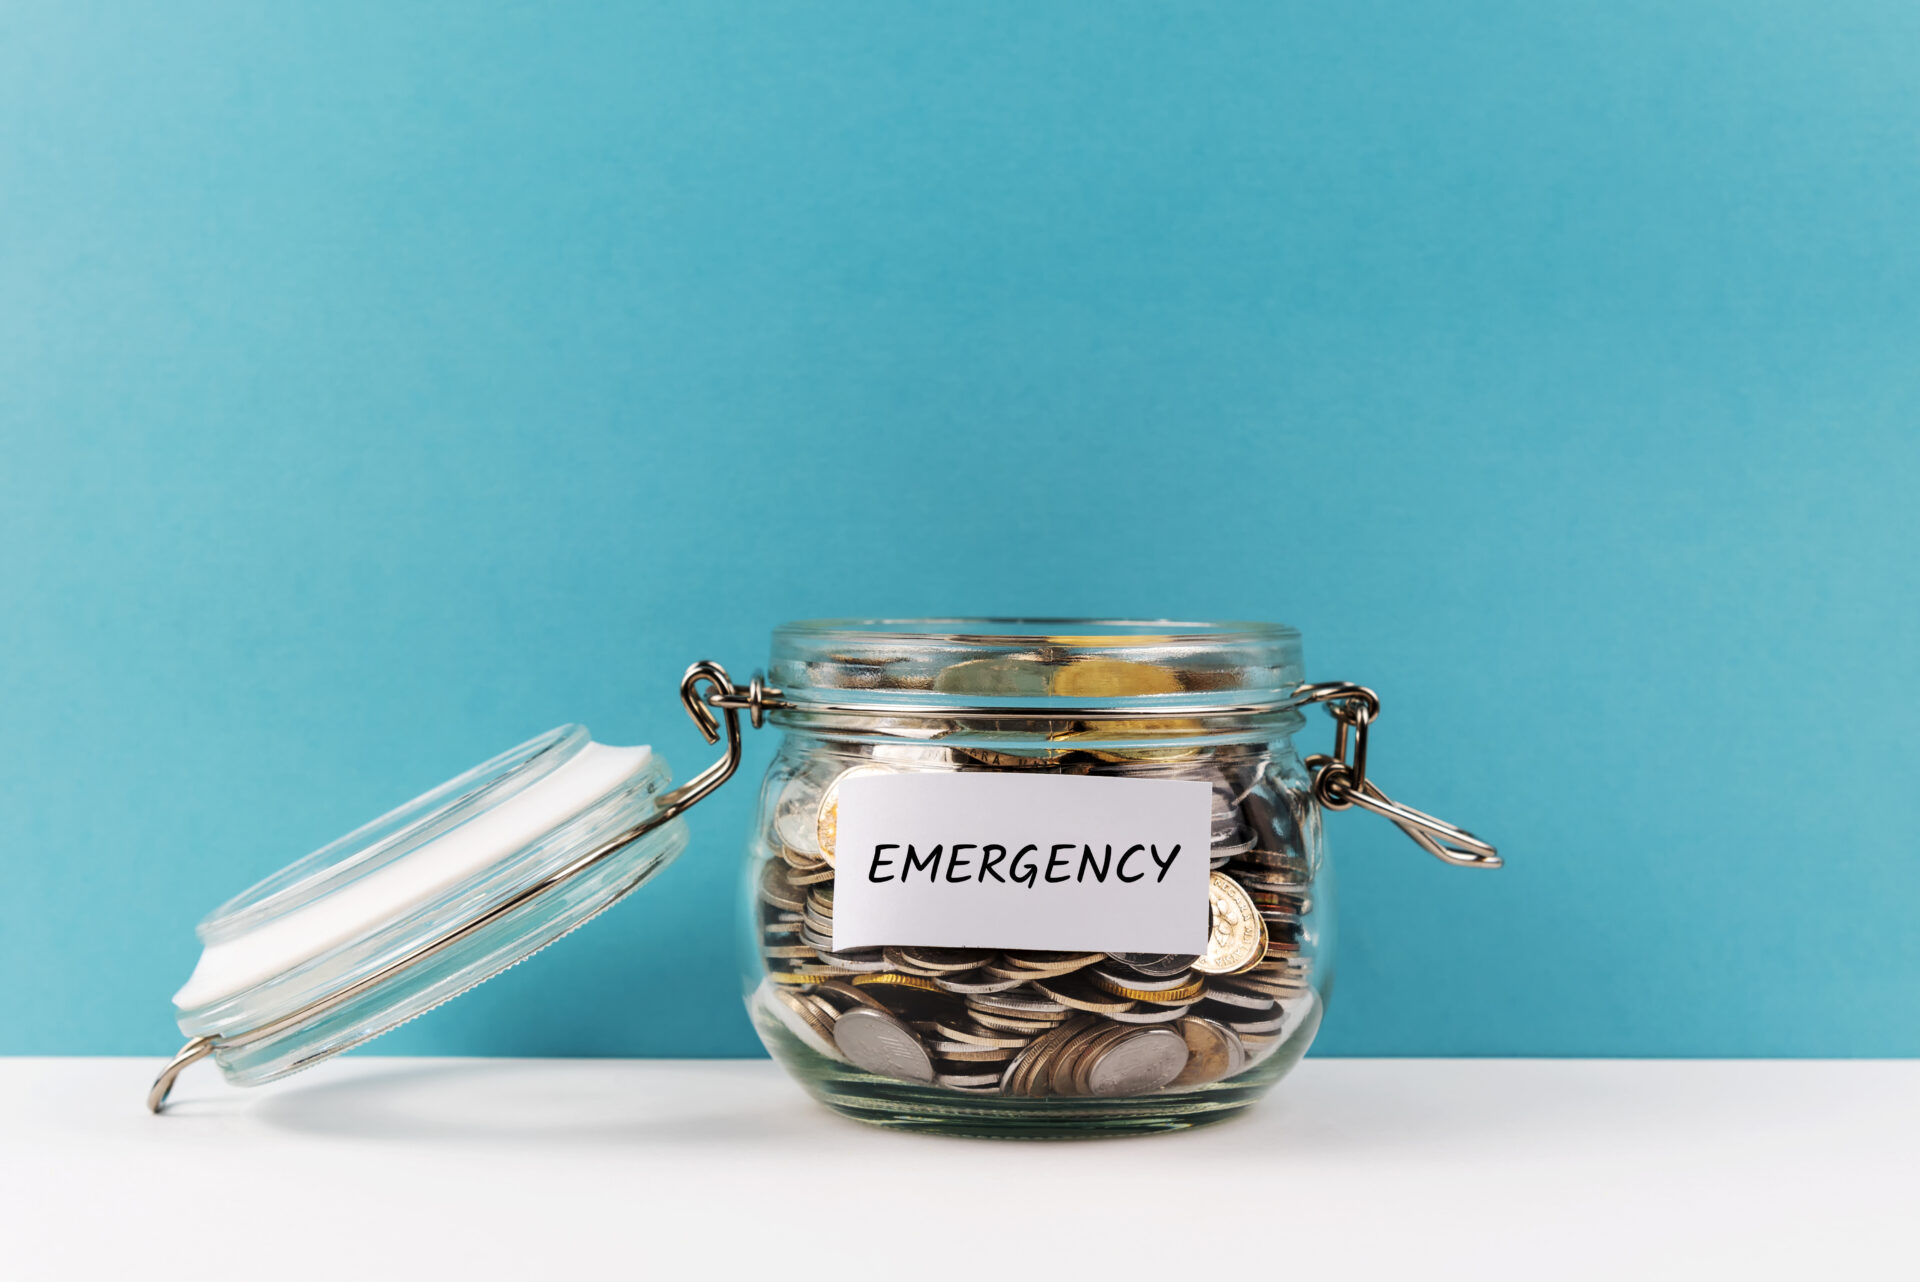 emergency-fund-coin-jar